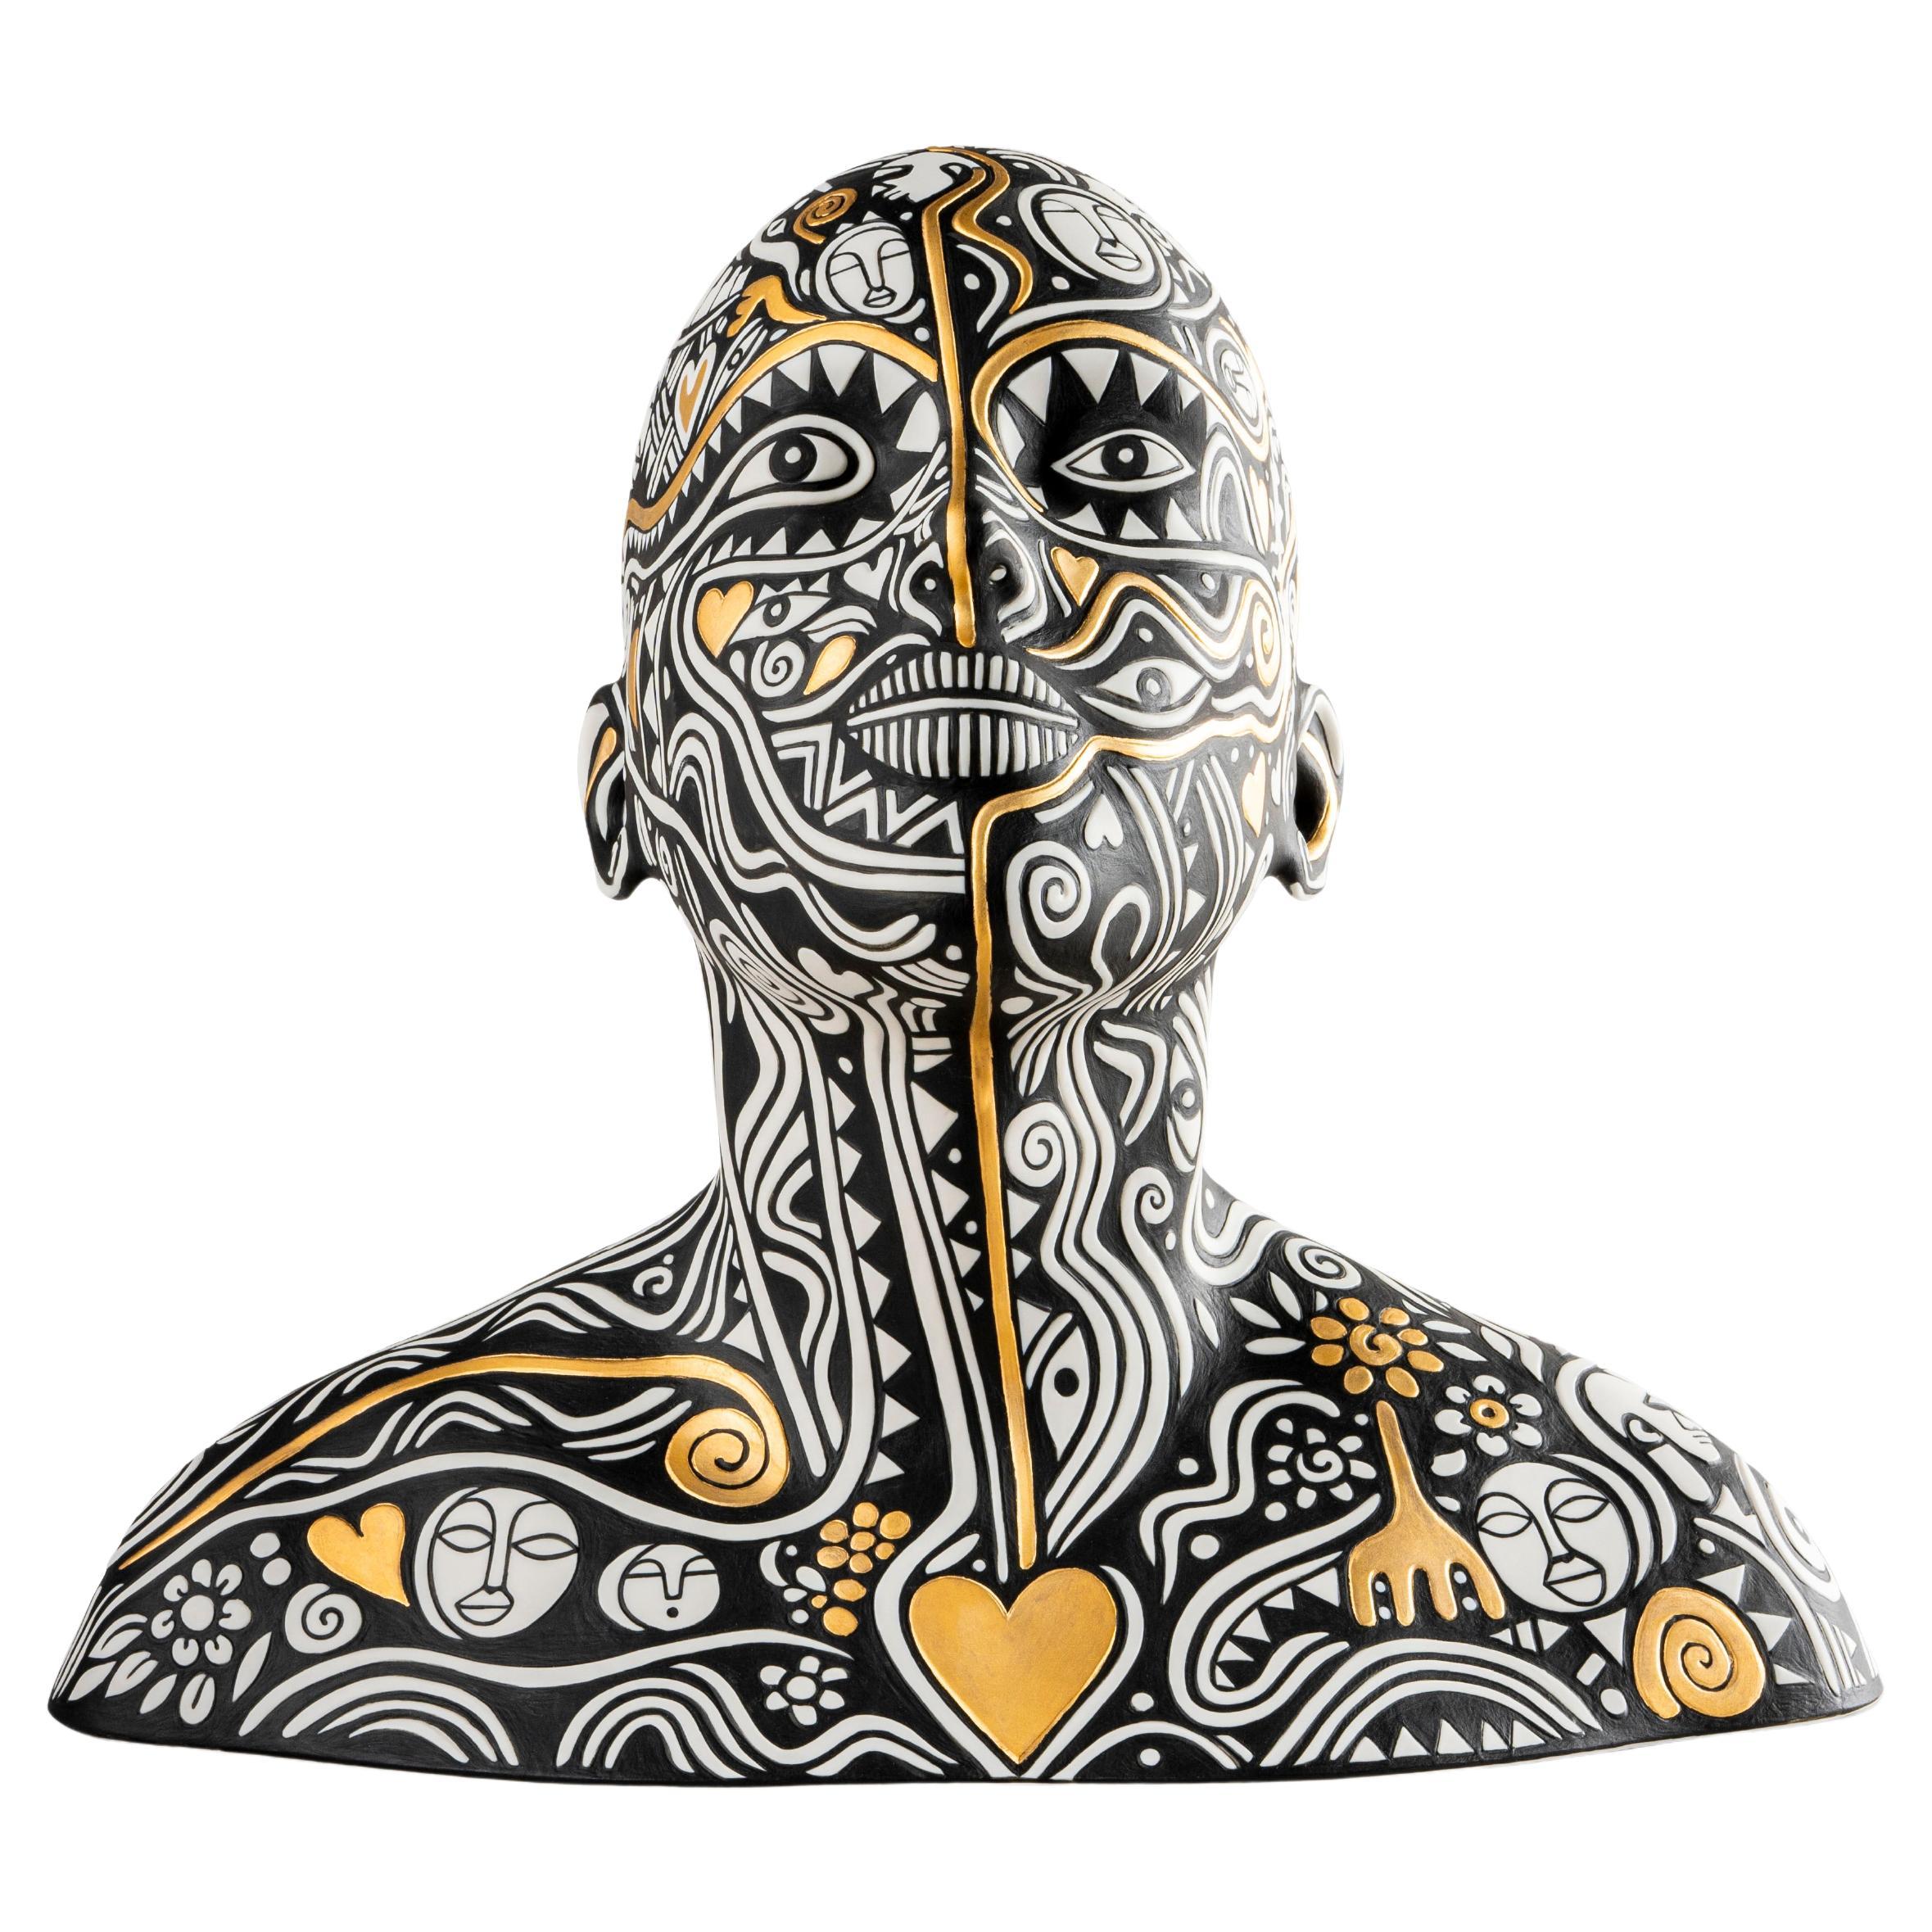 Le rêveur de Laolu - sculpture de buste. Édition limitée